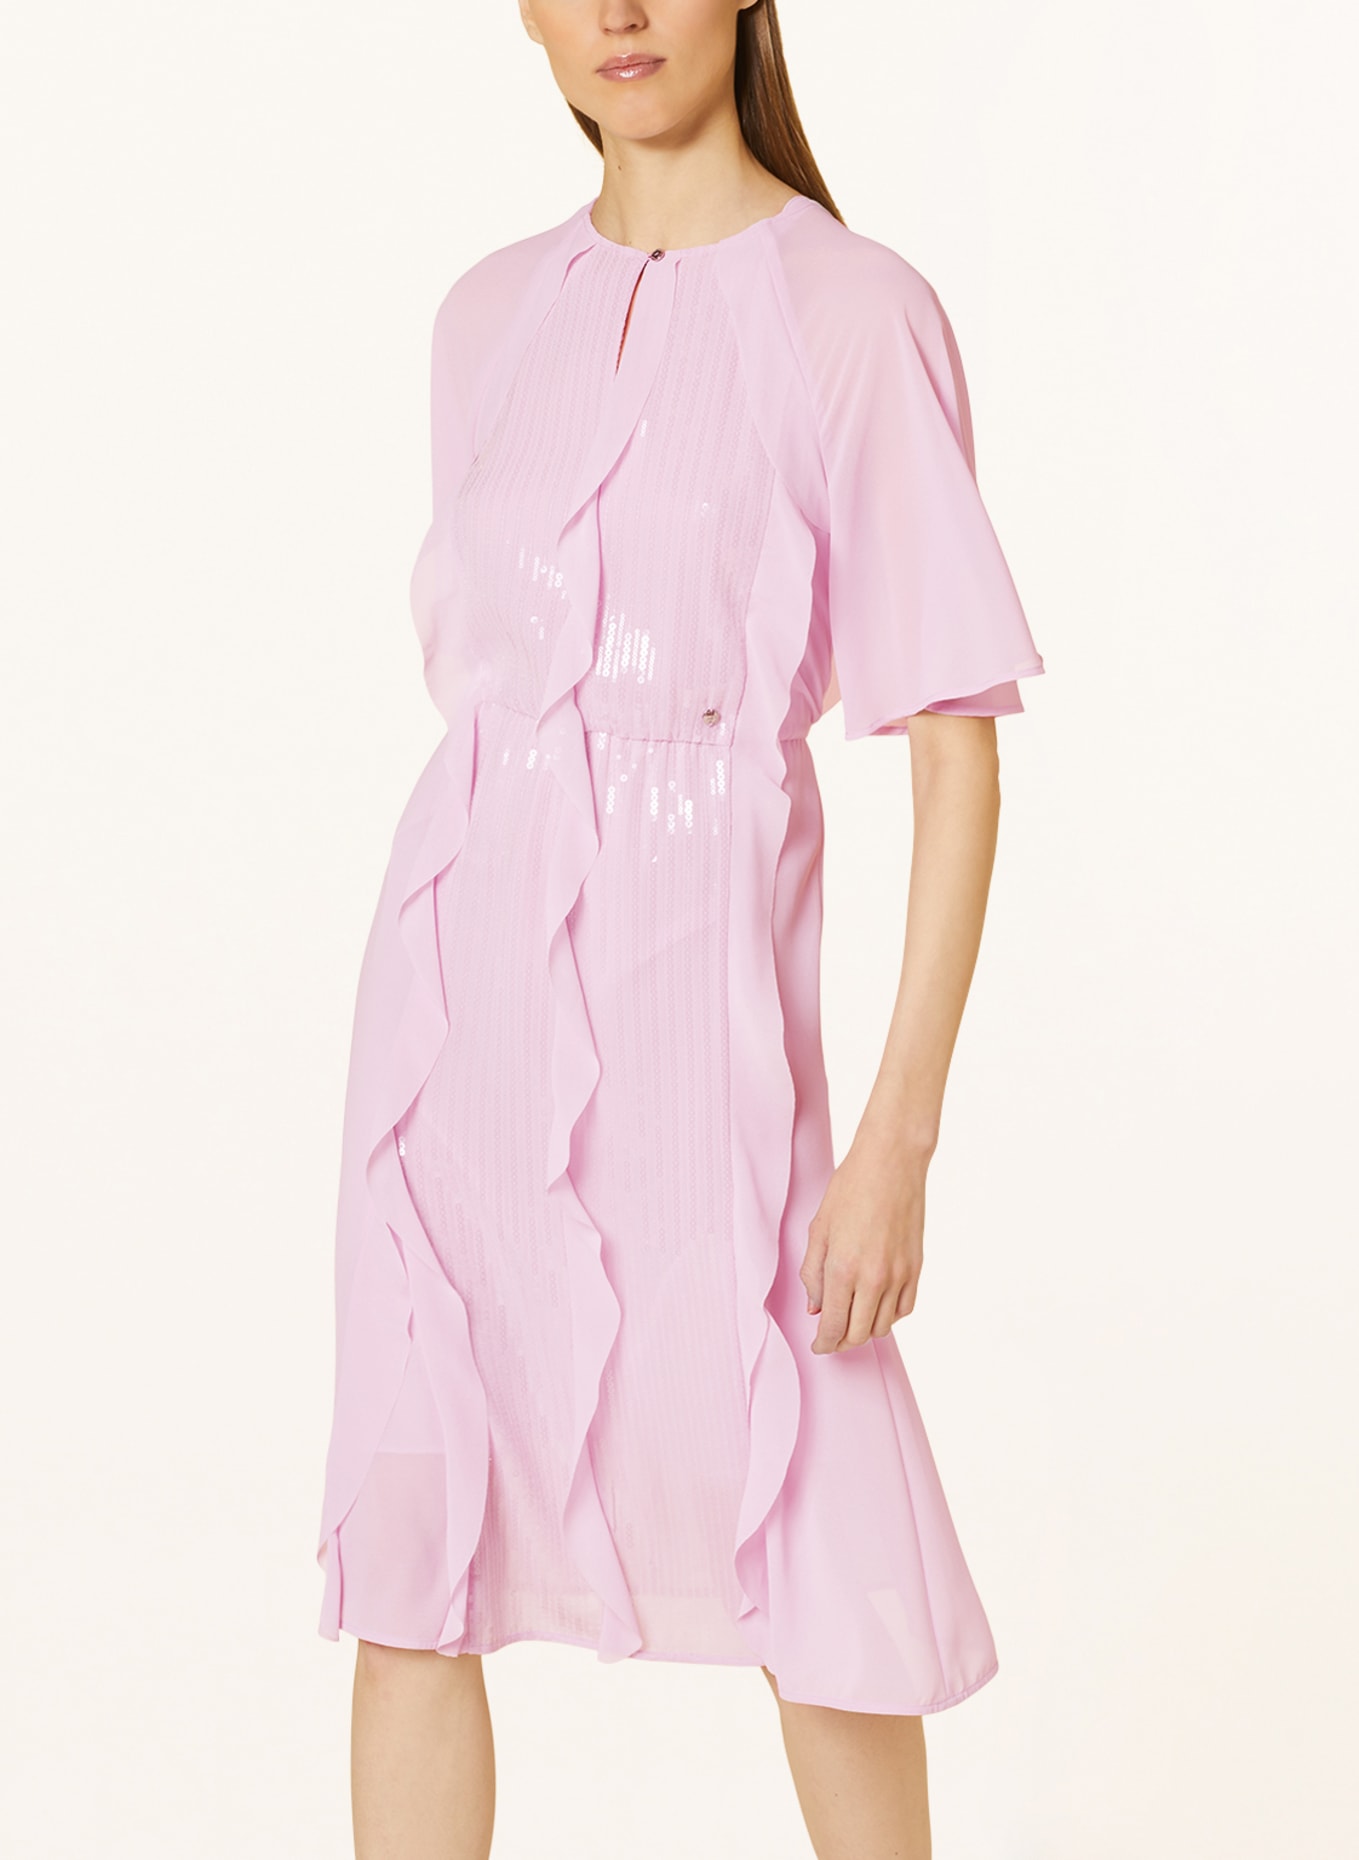 MARC CAIN Kleid mit Pailletten und Volants, Farbe: 709 pink lavender (Bild 5)